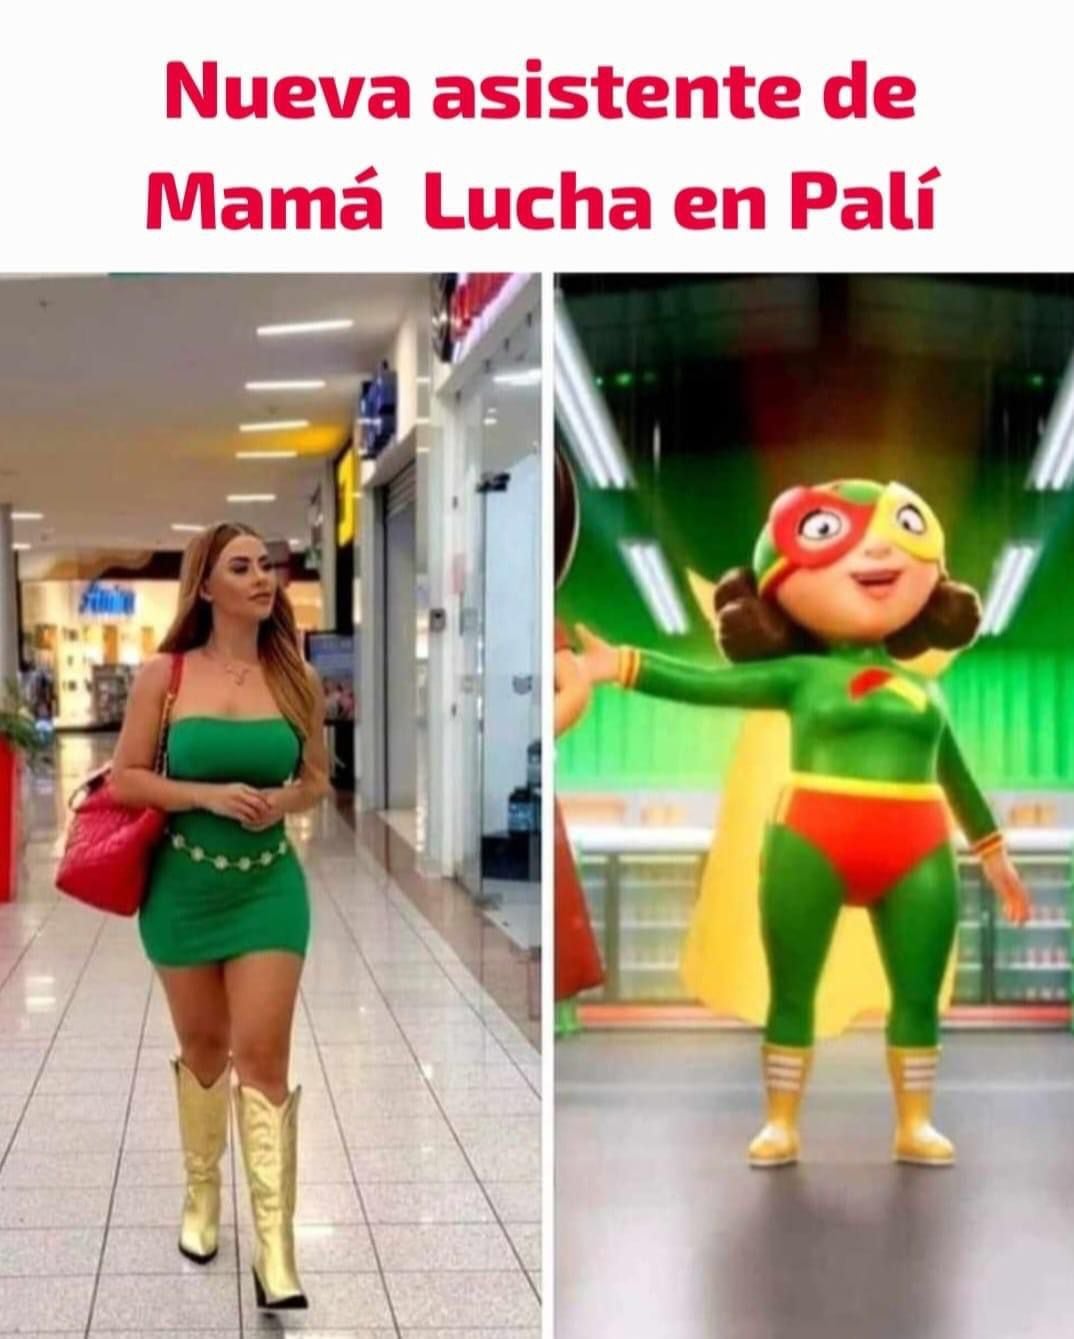 La ropa utilizada por Keyla Sánchez en una publicación reciente, prendió el bombillo de la 'chota' a algunos usuarios de redes sociales, que rápidamente la compararon con Mamá Lucha. Foto: Instagram 